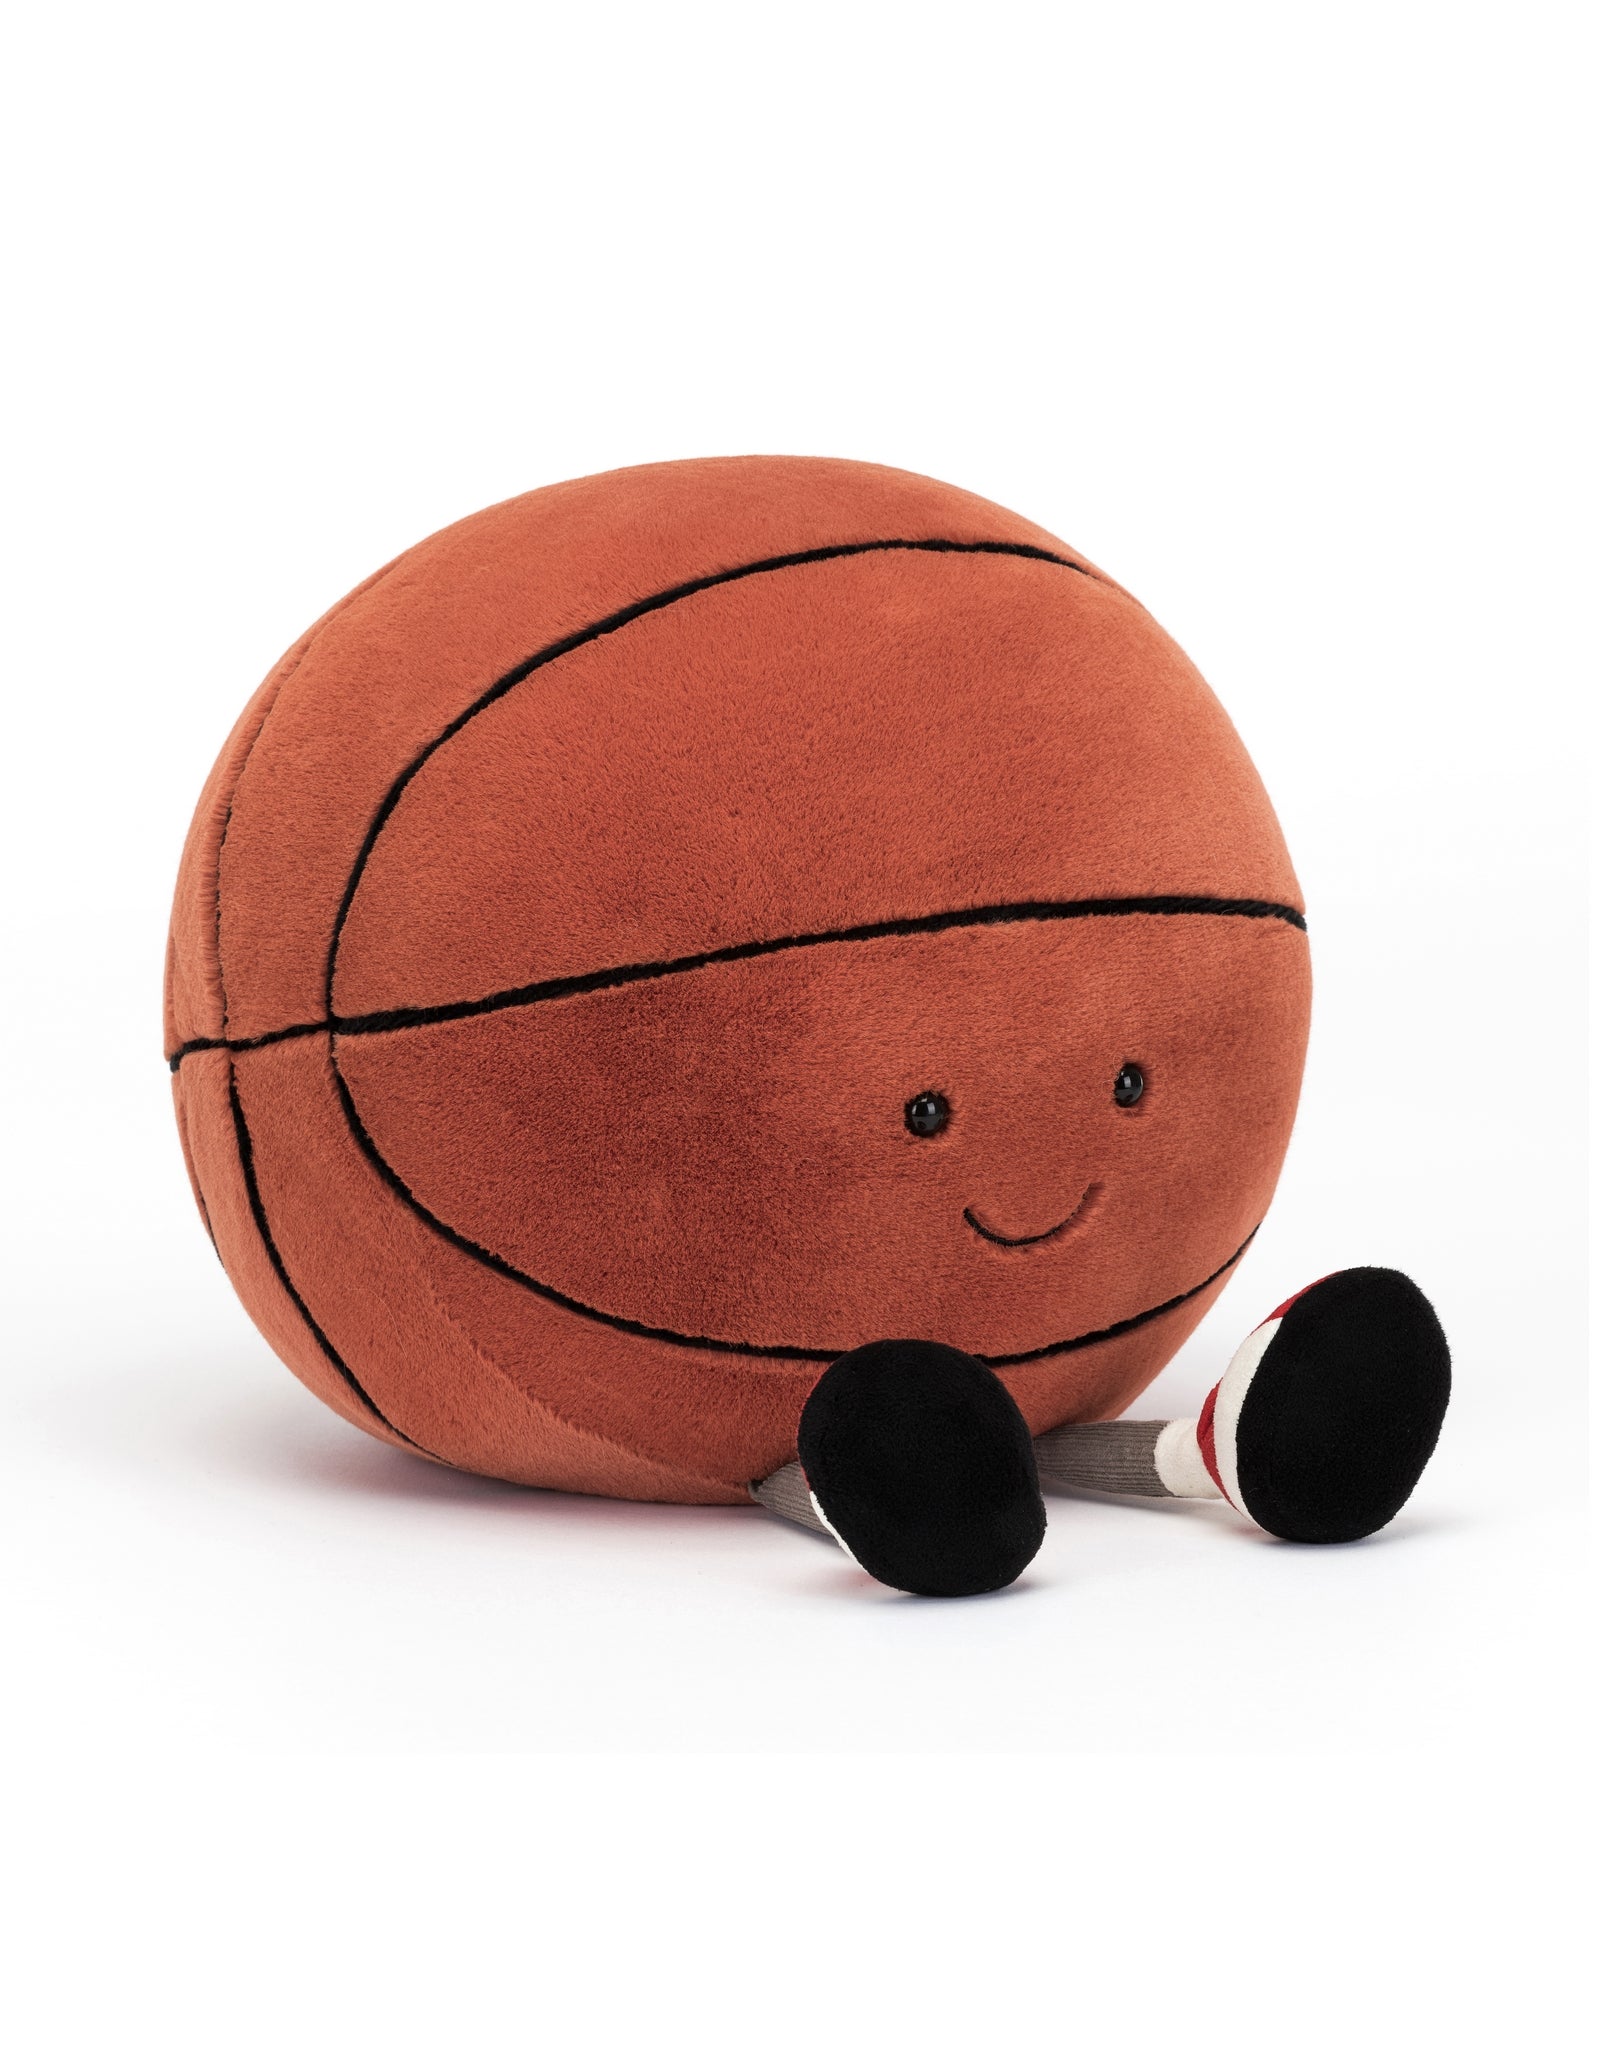  Ballons De Basket - Depuis 1 Mois / Ballons De Basket